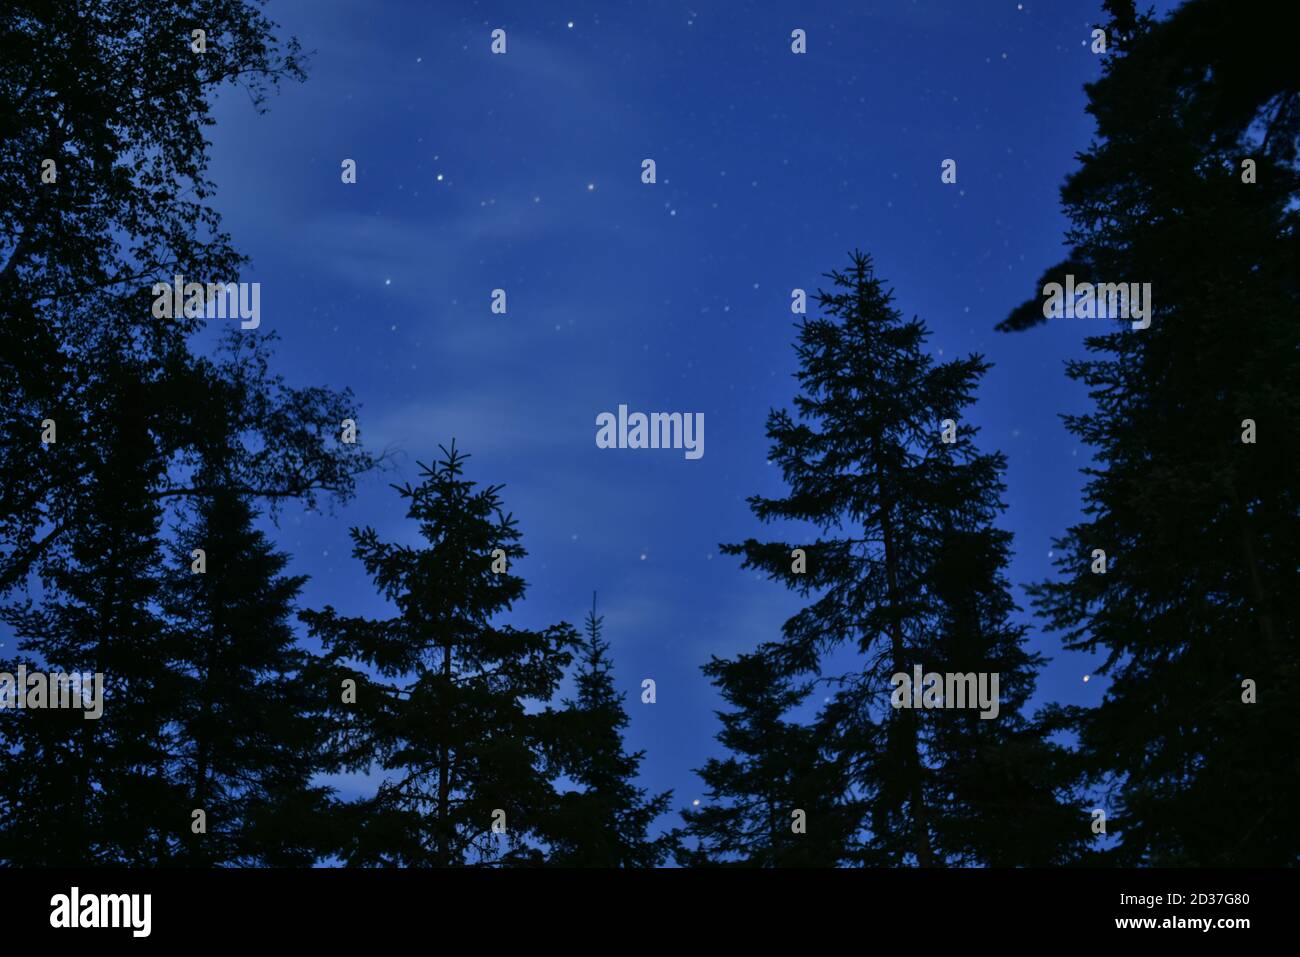 Silhouette di abeti neri contro il cielo serale, con stelle e formazioni di nuvole chiare Foto Stock